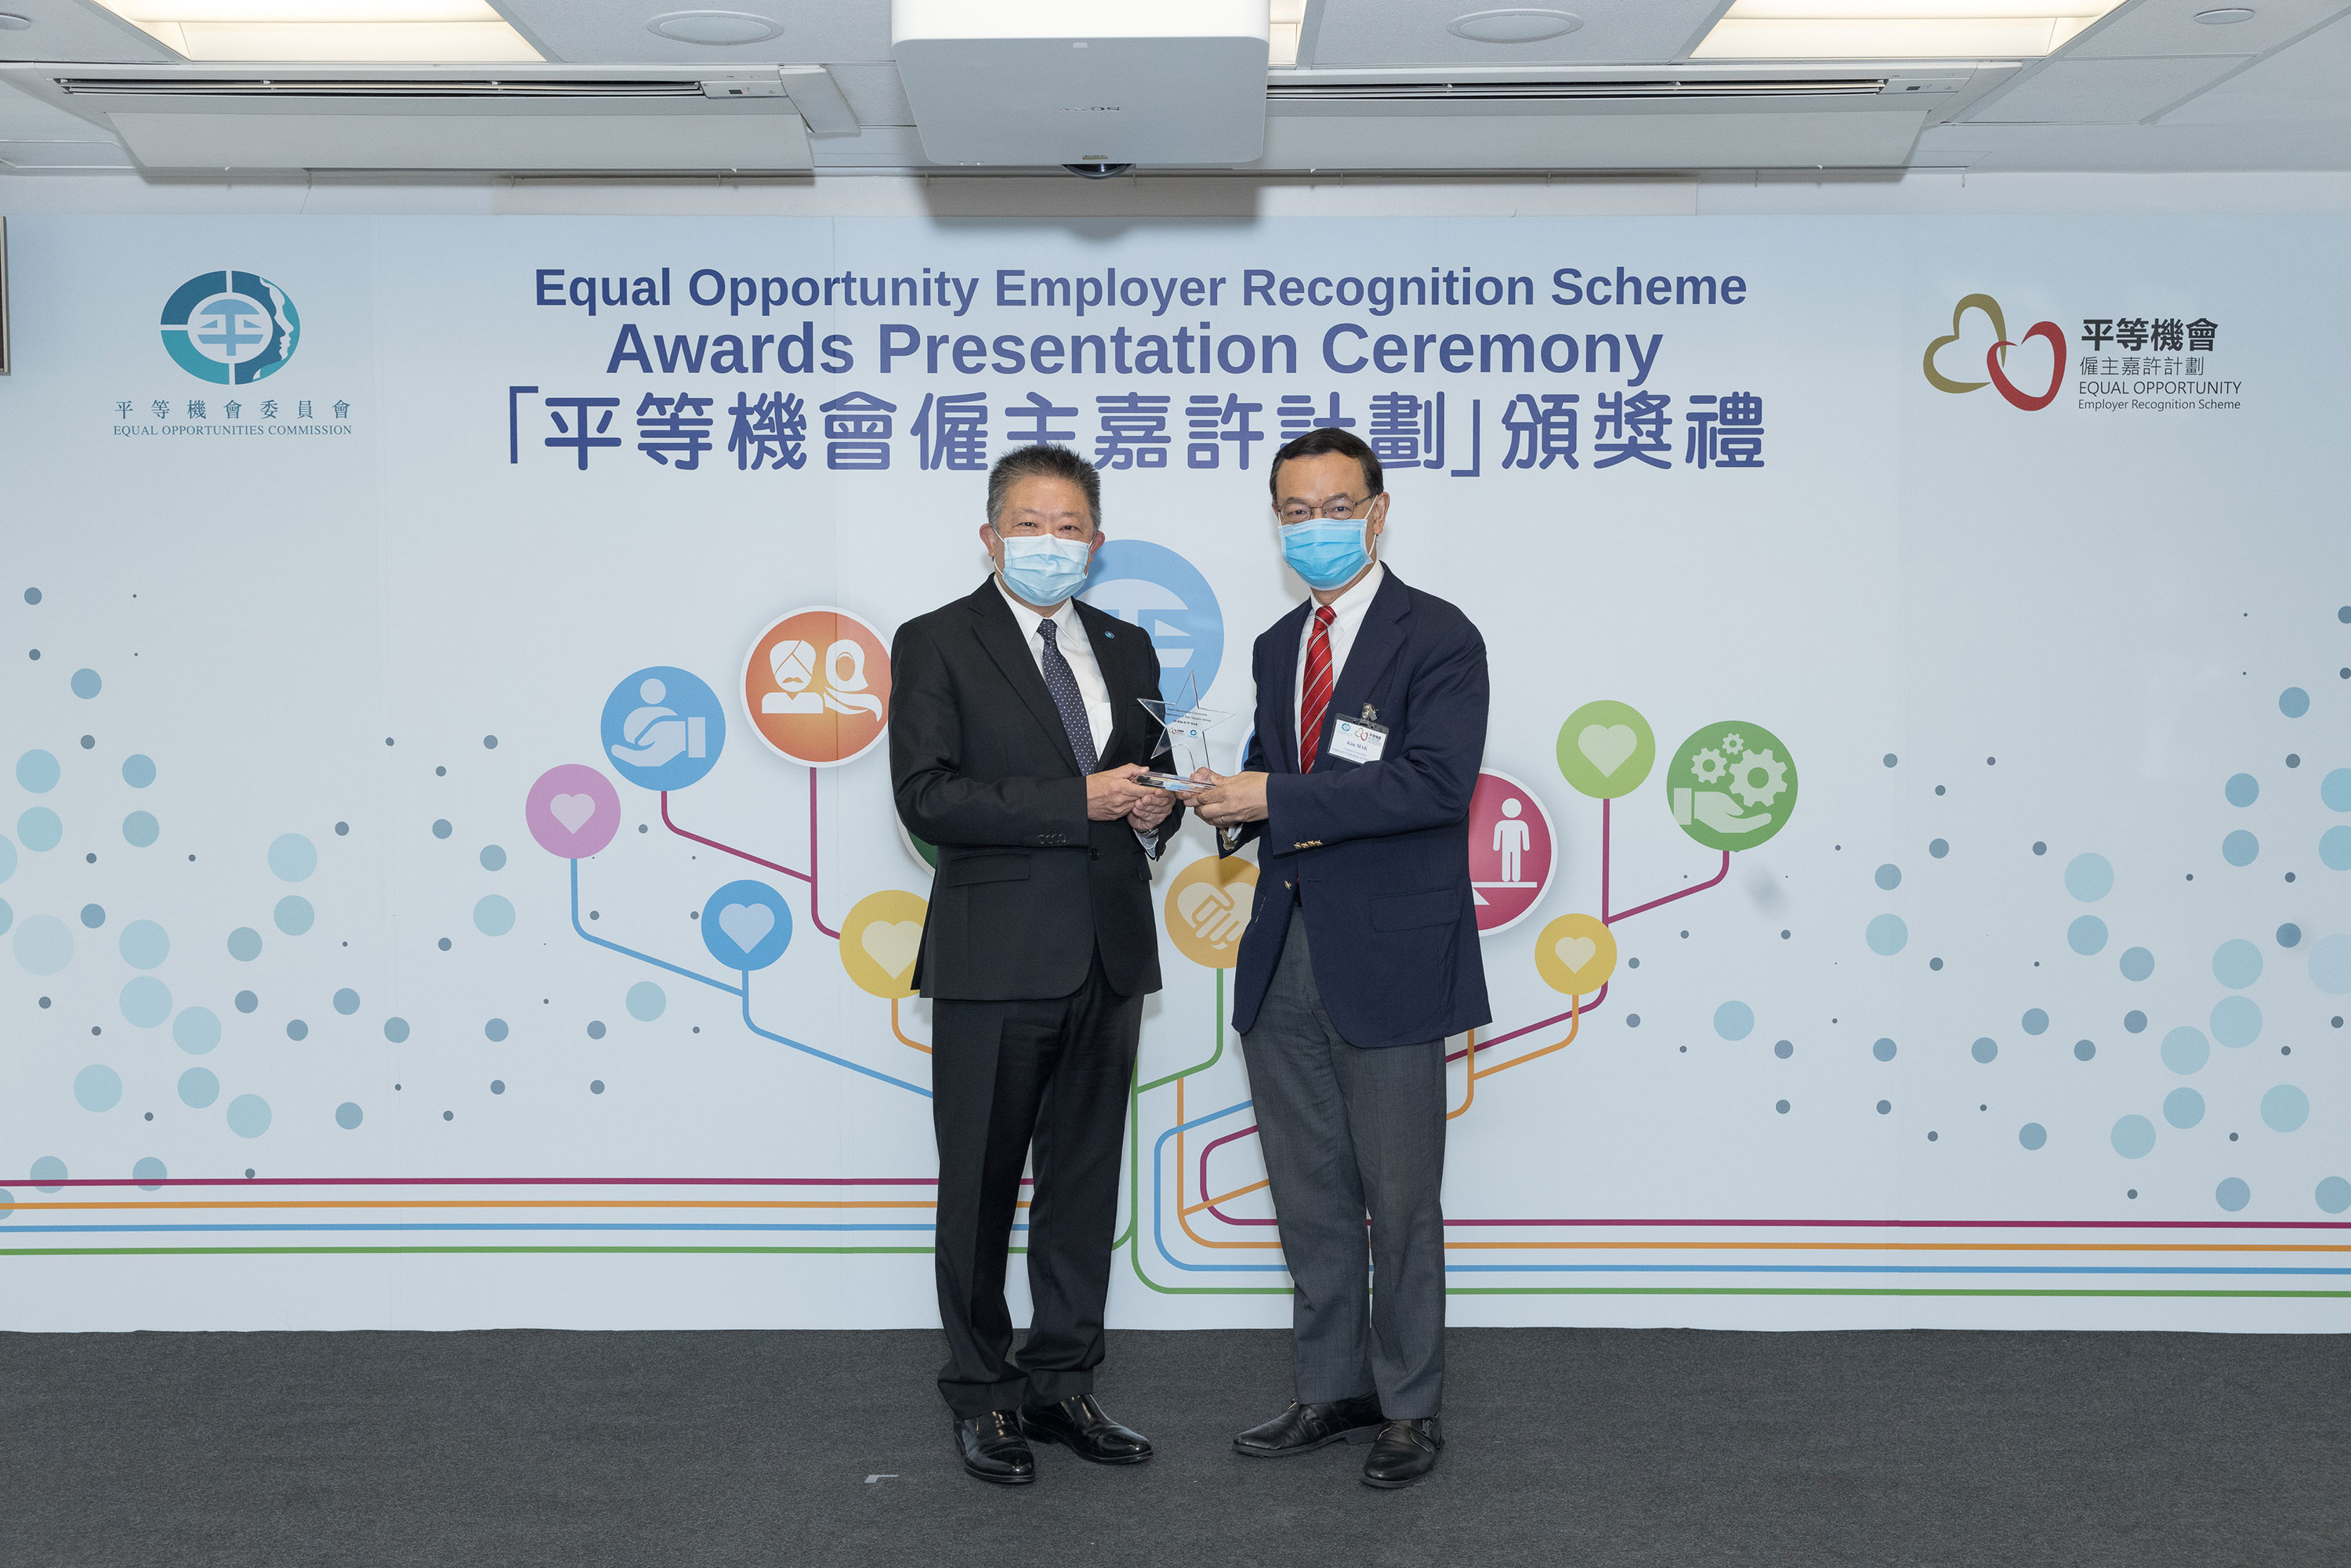 平機會主席朱敏健先生, IDS (左)頒發紀念品予出任平等機會僱主嘉許計劃評審團成員的香港僱主聯合會理事會理事麥建華博士(右)。